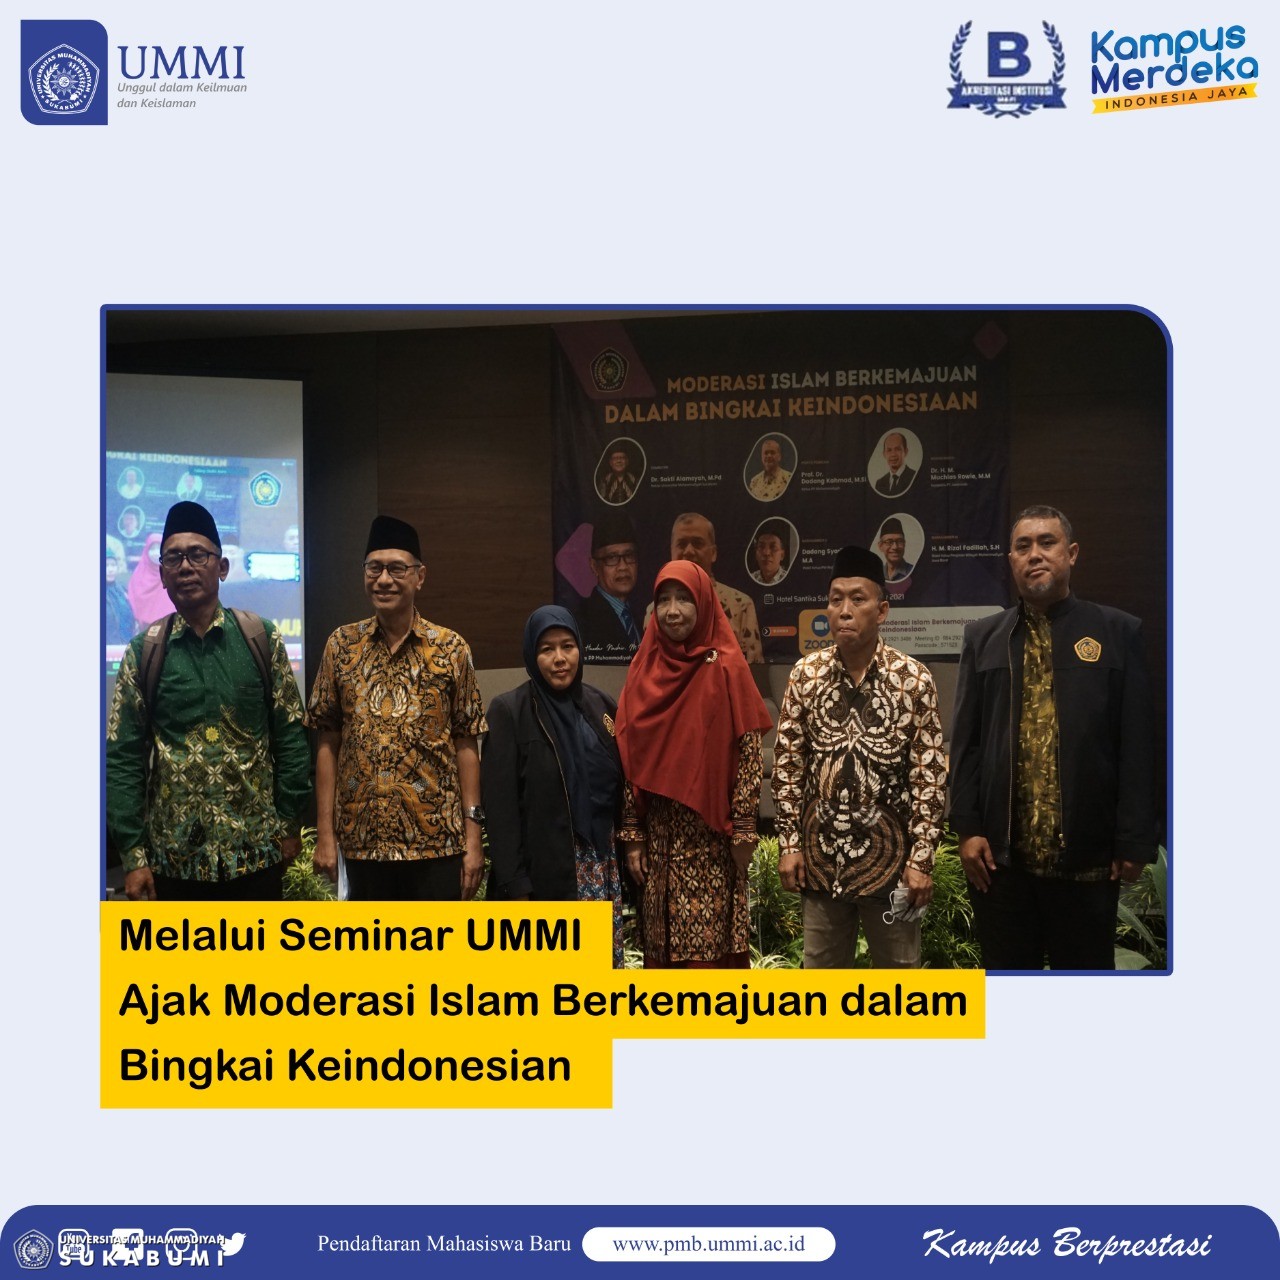 Melalui Seminar UMMI Ajak Moderasi Islam Berkemajuan Dalam bingkai ke Indonesian.